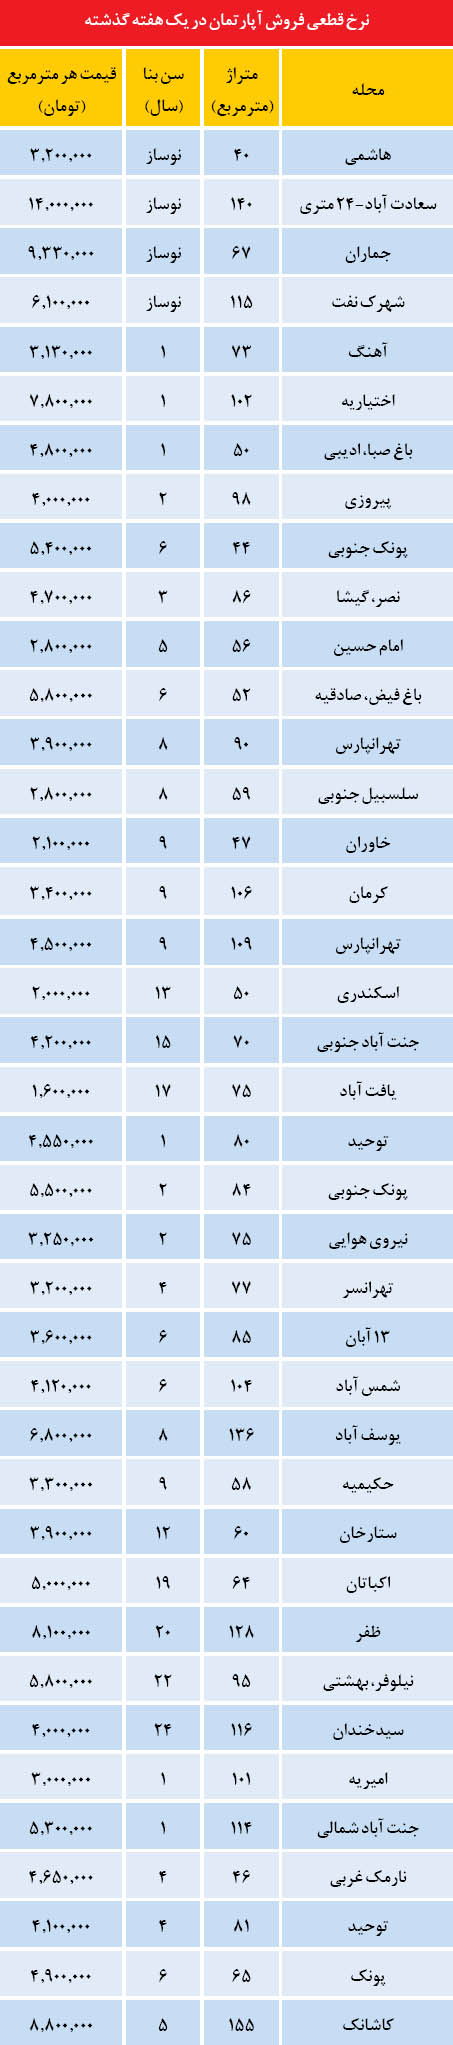 قیمت آپارتمان در محله جماران (+جدول)